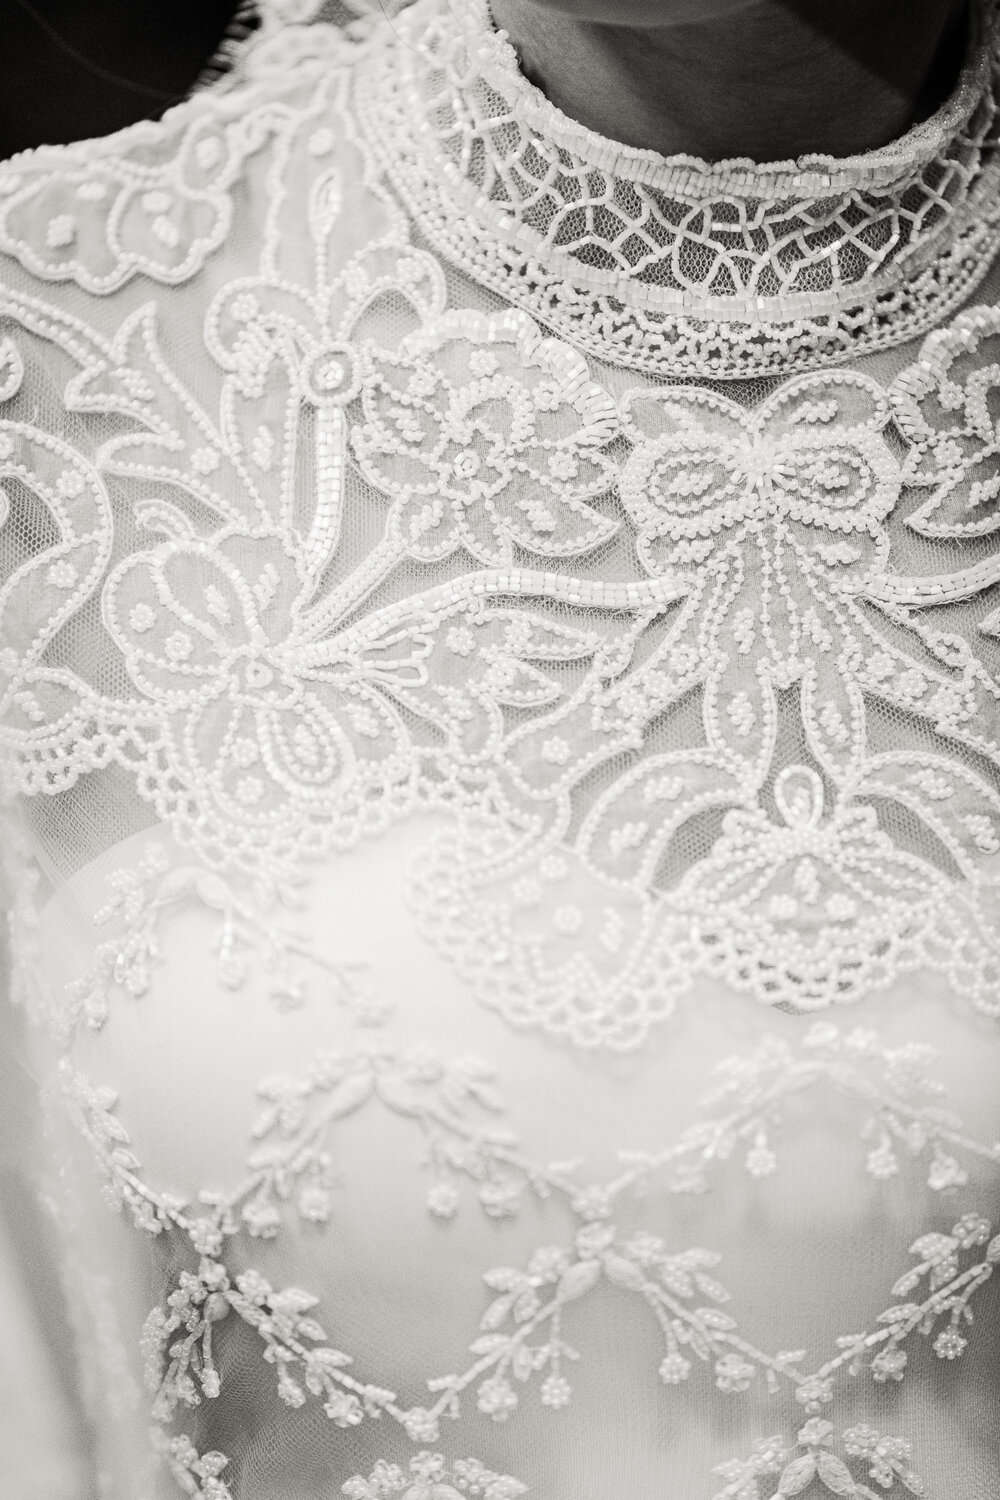 vintage valentino wedding dress feaured in vogue by brian dorsey